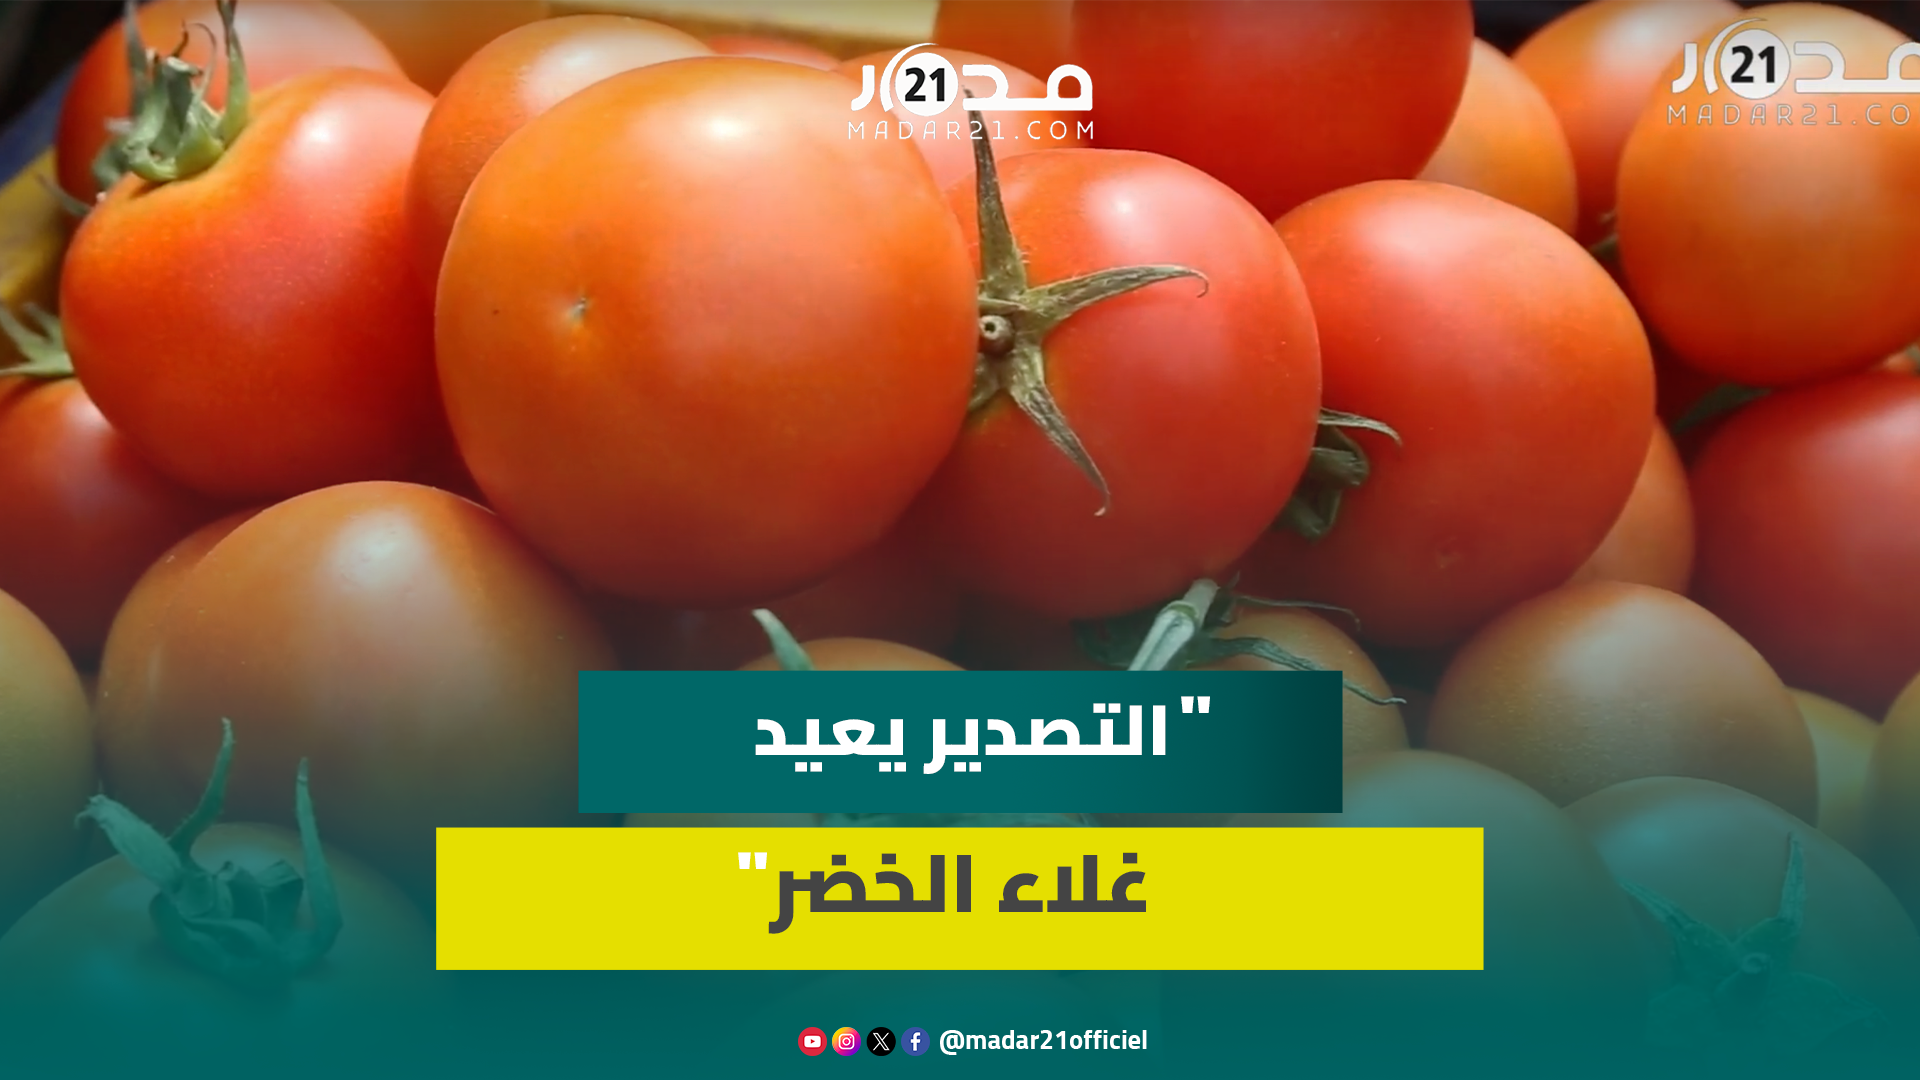 قلة السلع ترفع ثمن الطماطم والبصل وتجار بسوق الجملة يرجعون السبب للتصدير